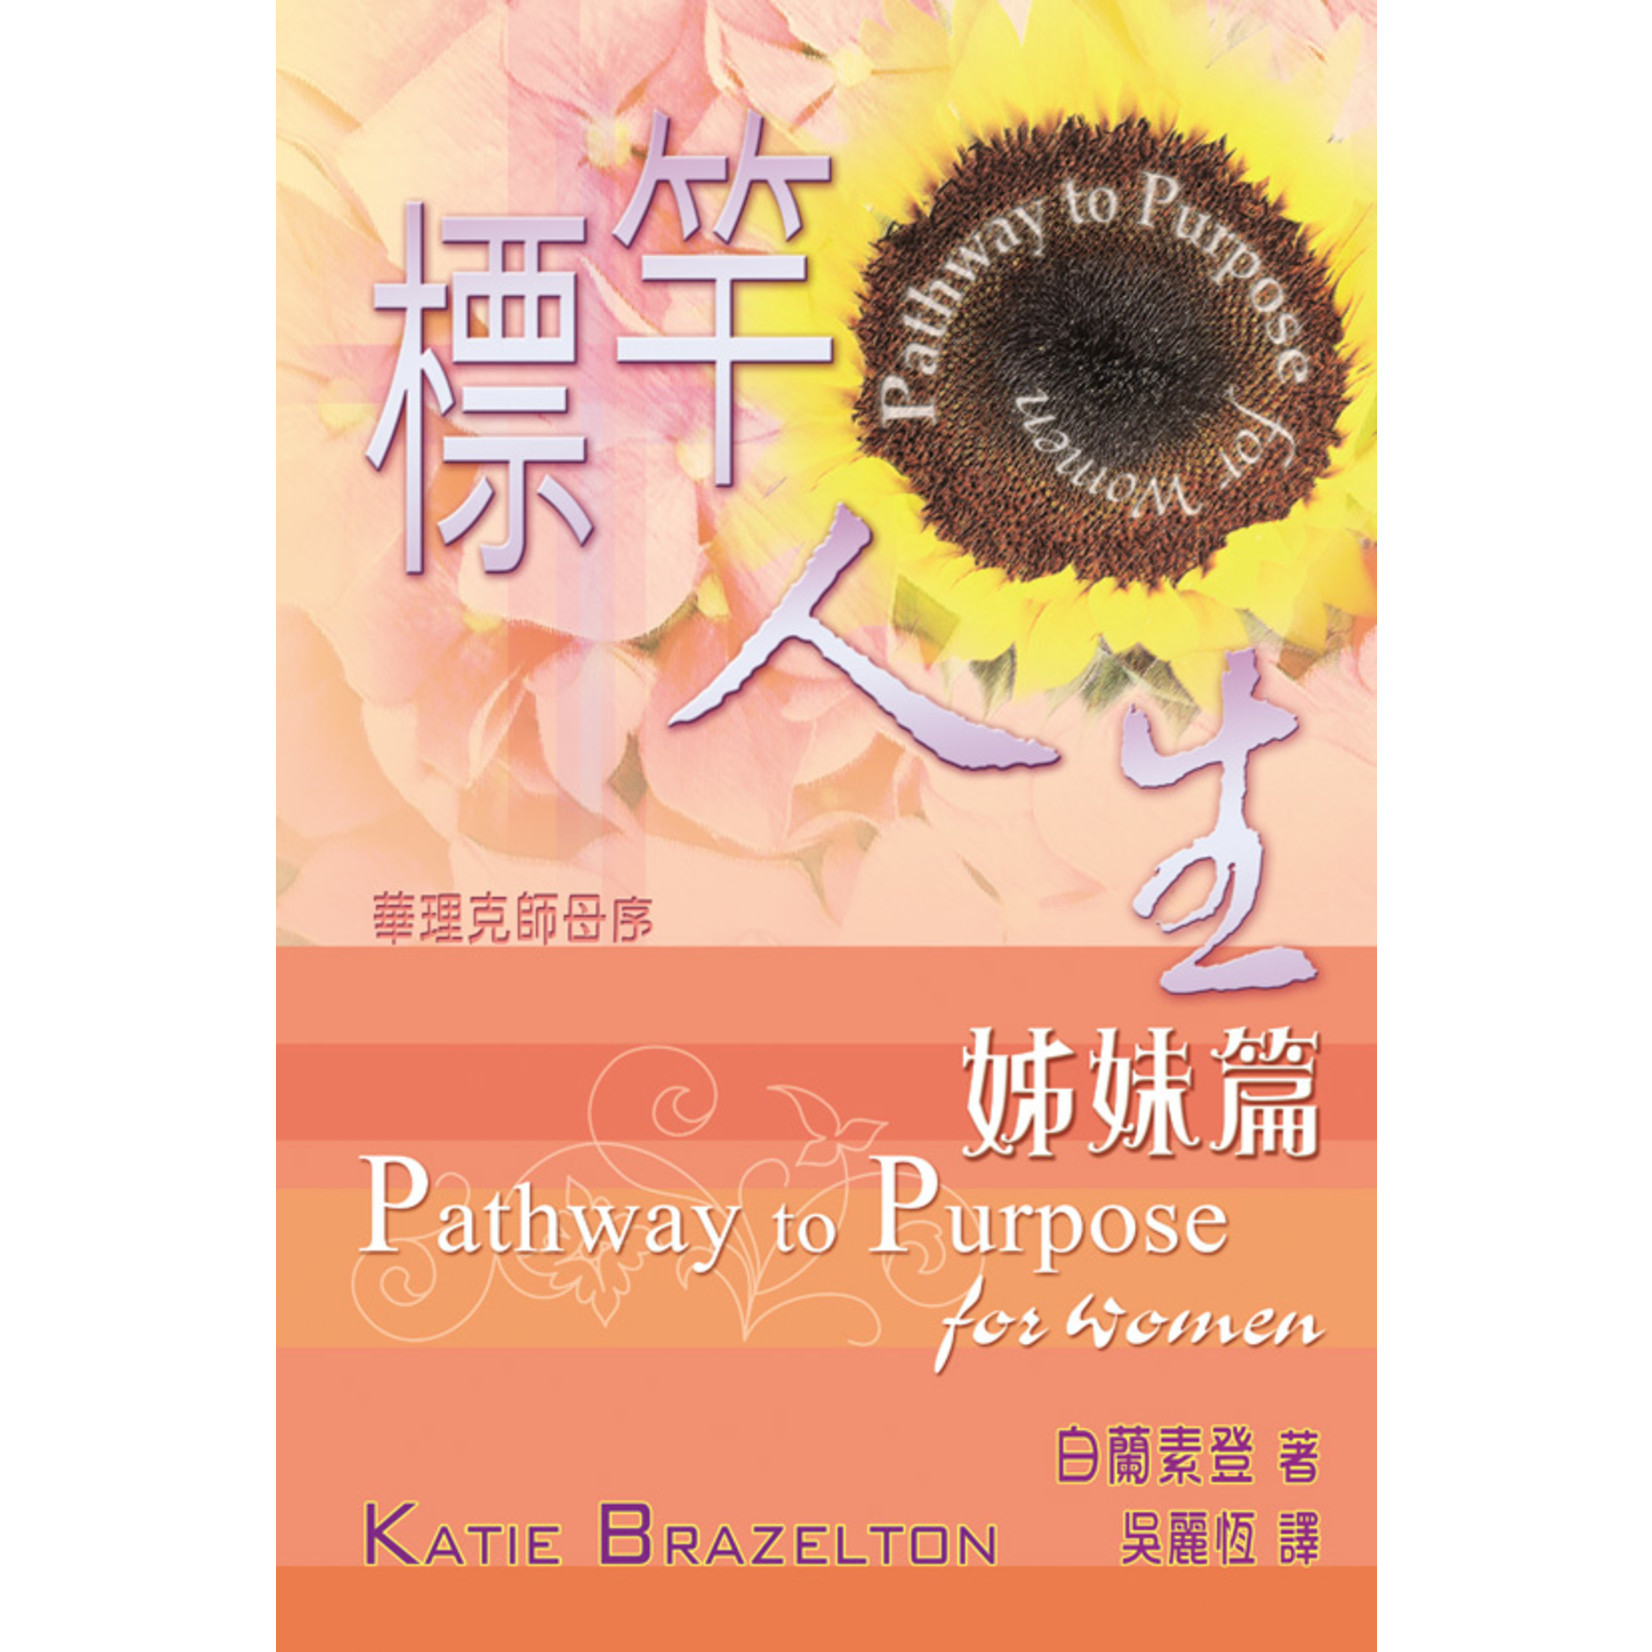 天道書樓 Tien Dao Publishing House 標竿人生：姊妹篇 Pathway to Purpose for Women